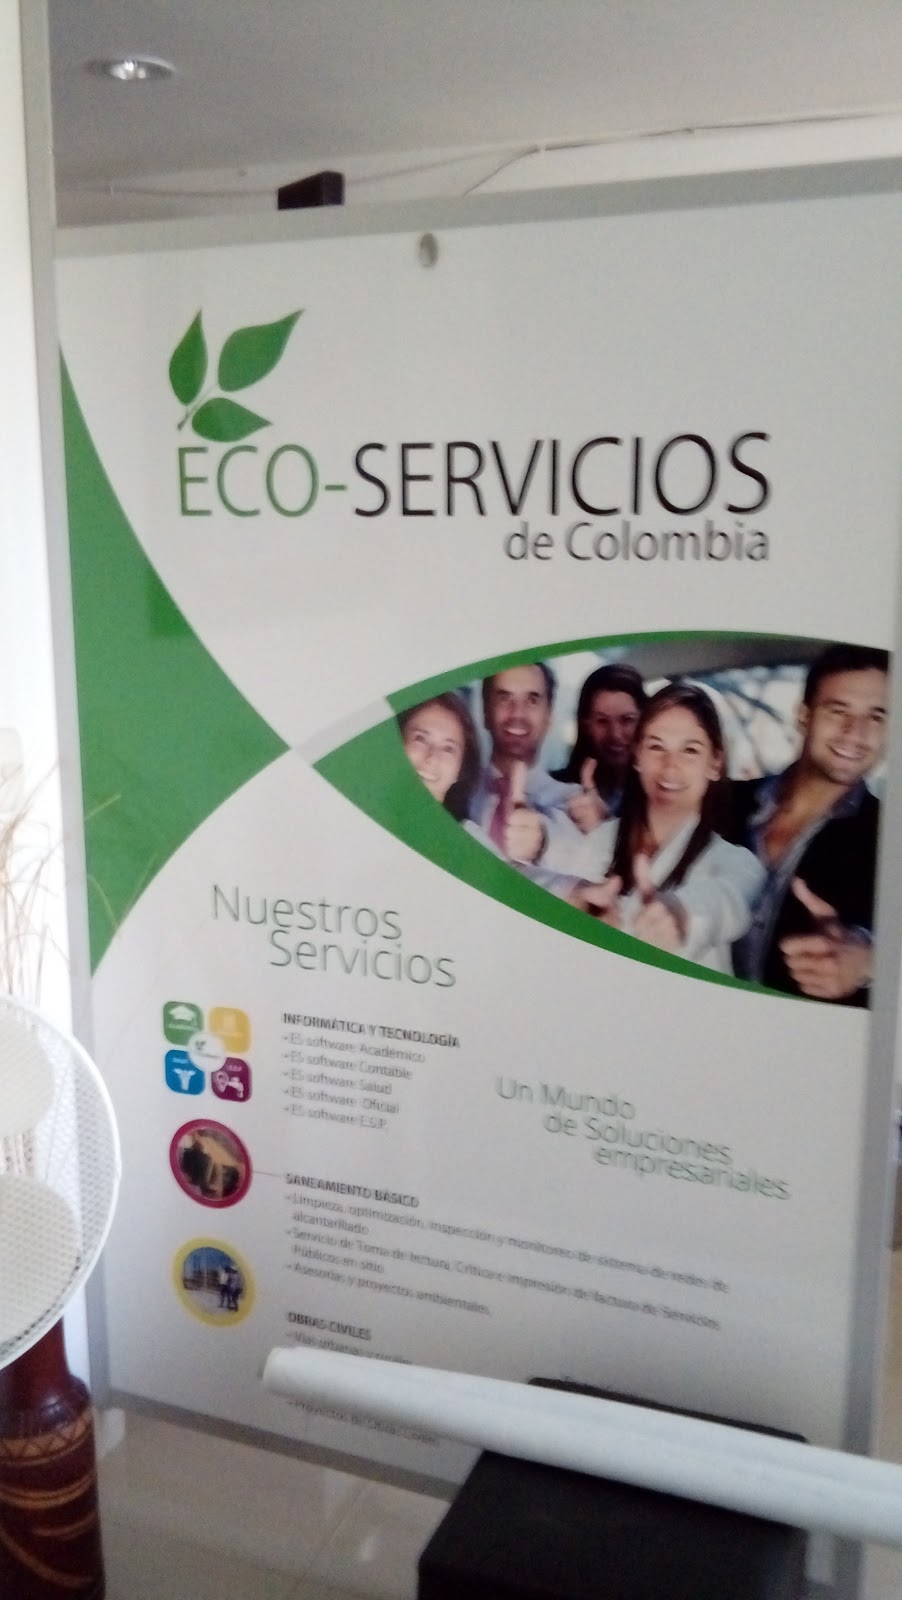 Eco-servicios de Colombia